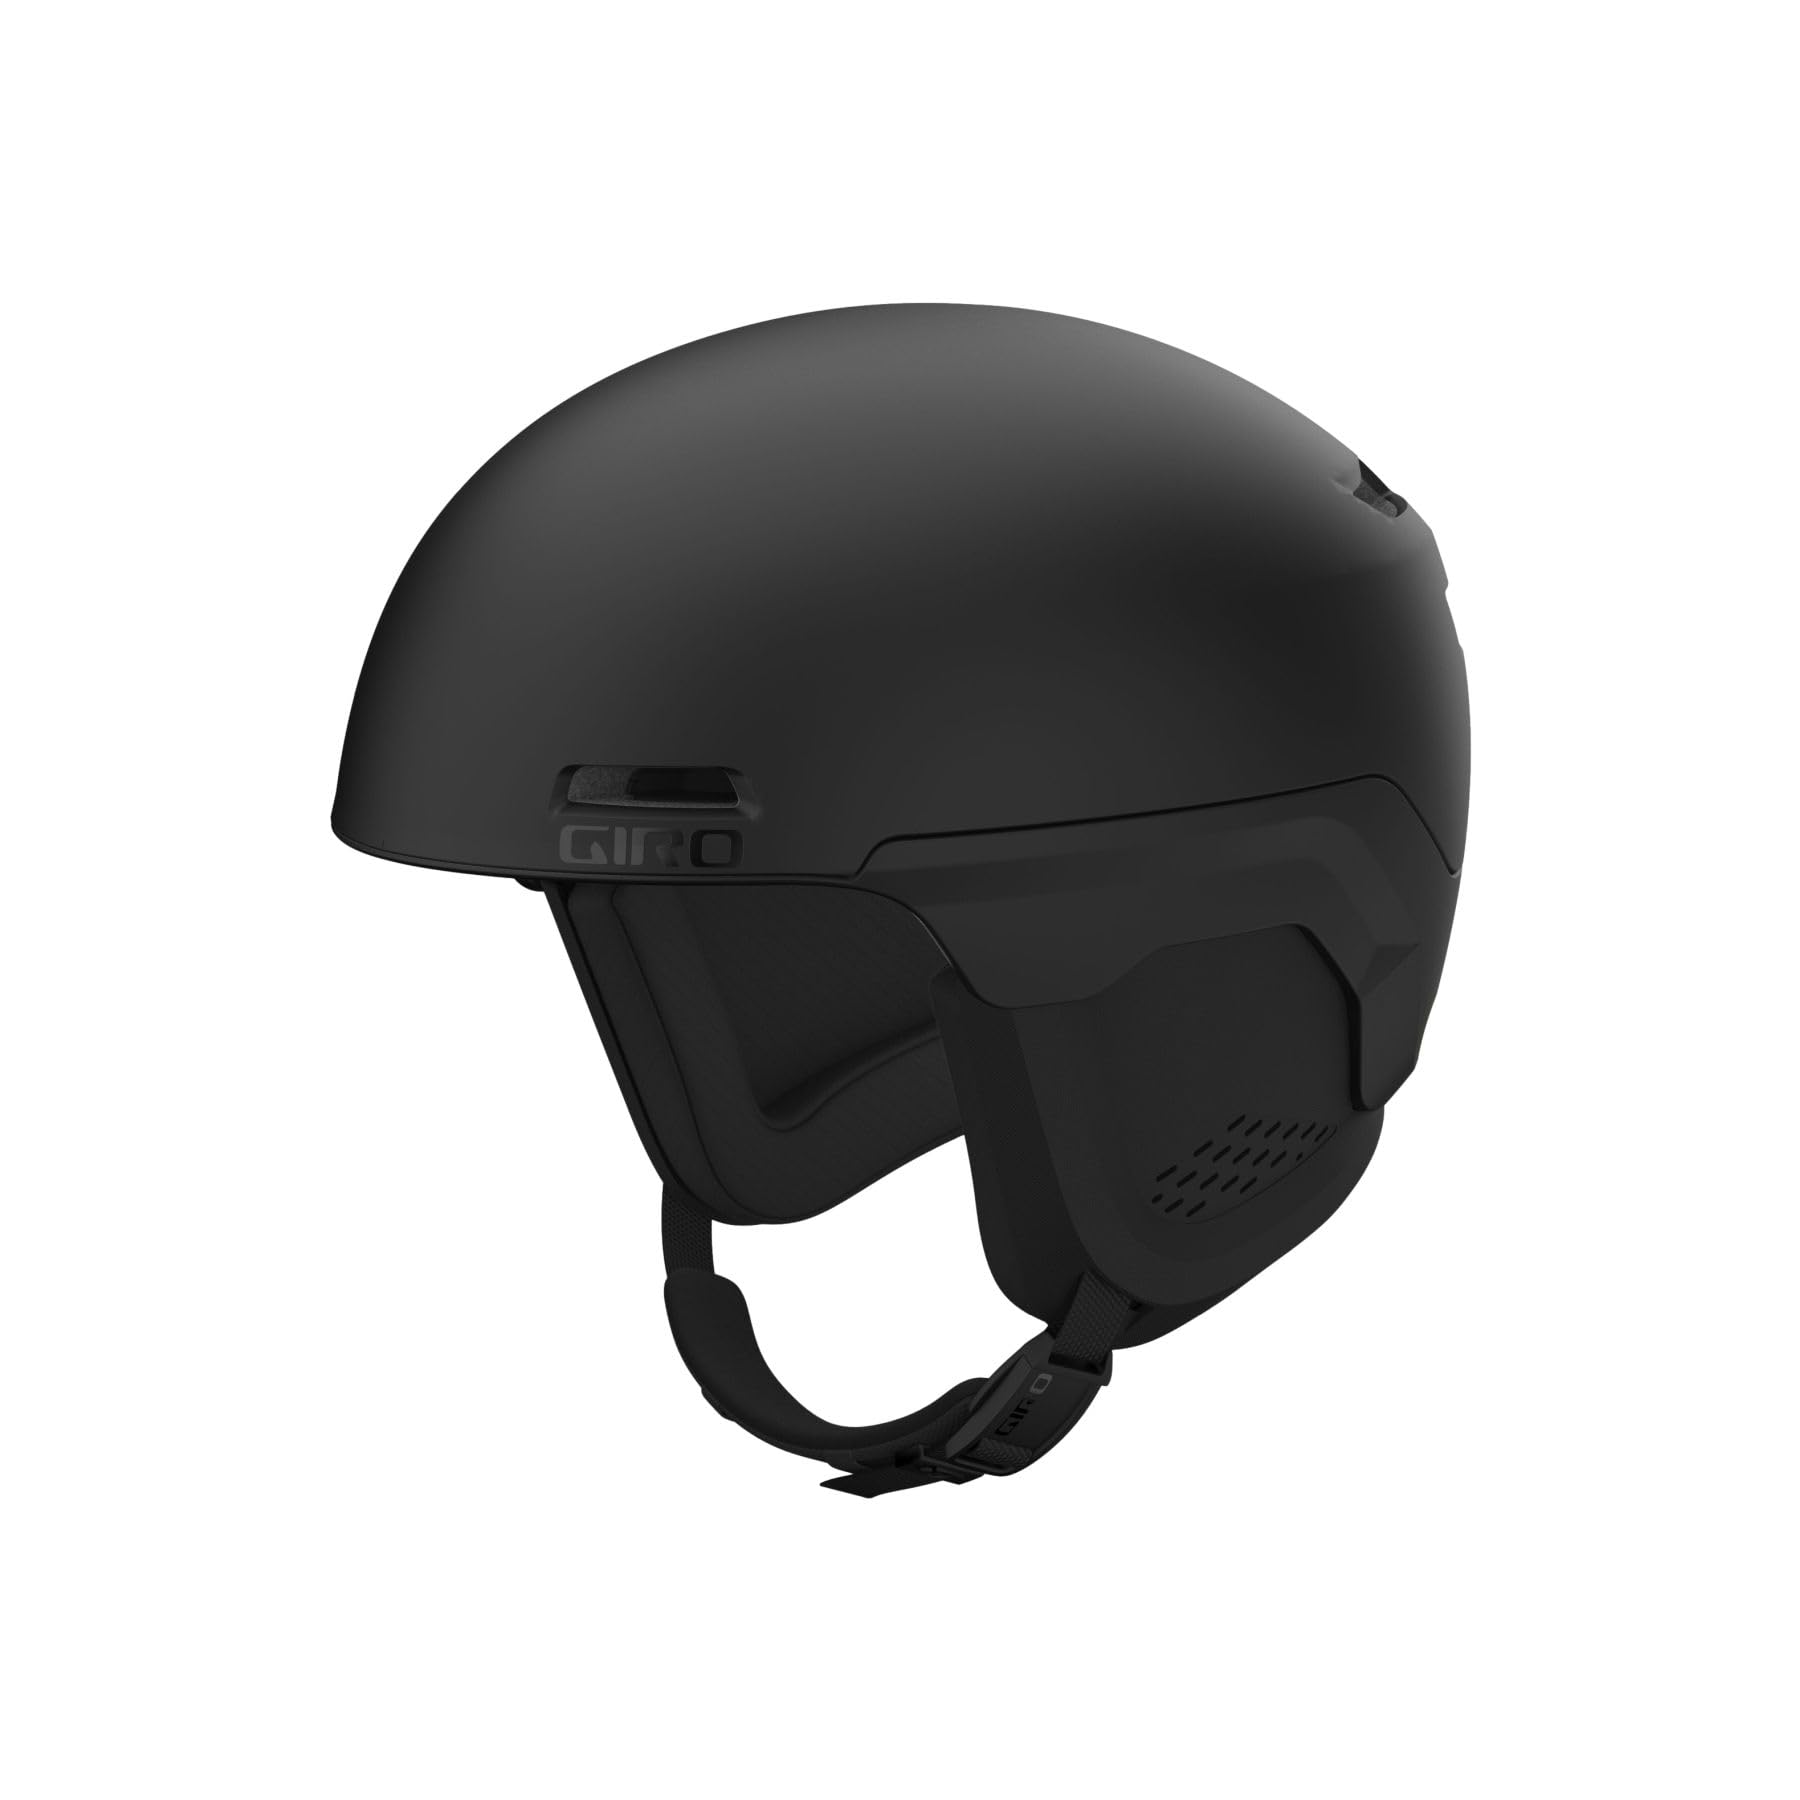 Giro Owen Spherical Ski Helmet - Snowboarding Helmet for Men Women and Youth - Matte Black - M 55.5-59cm並行輸入品